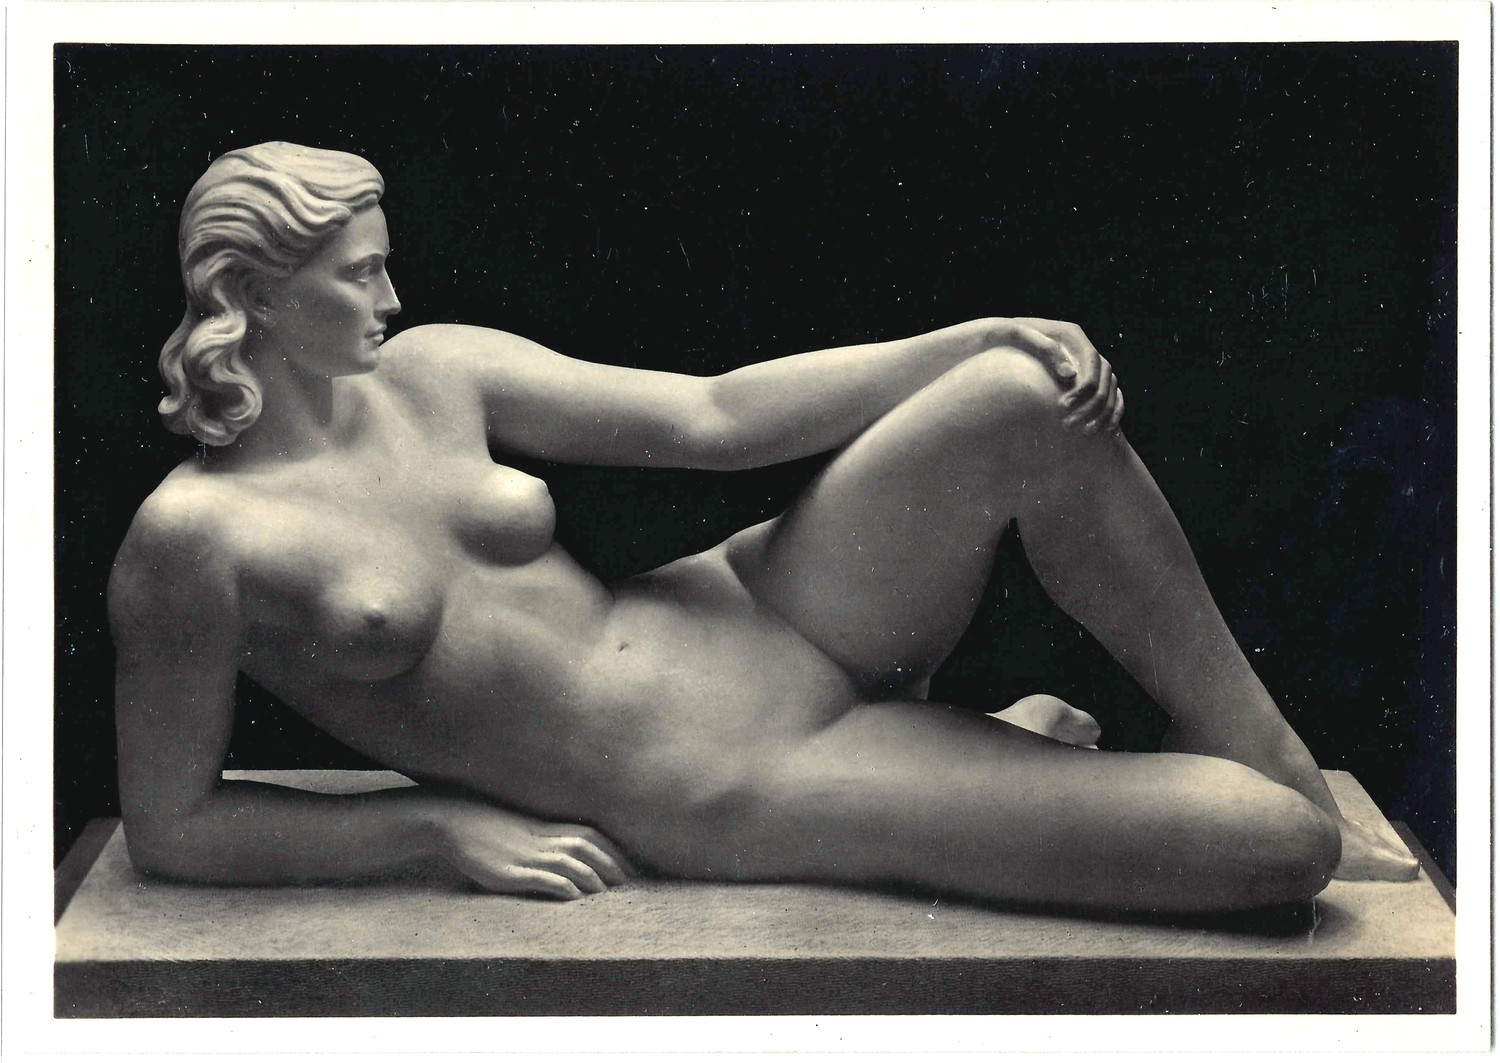 29 открыток «Ню в искусстве». Германия, середина XX века.